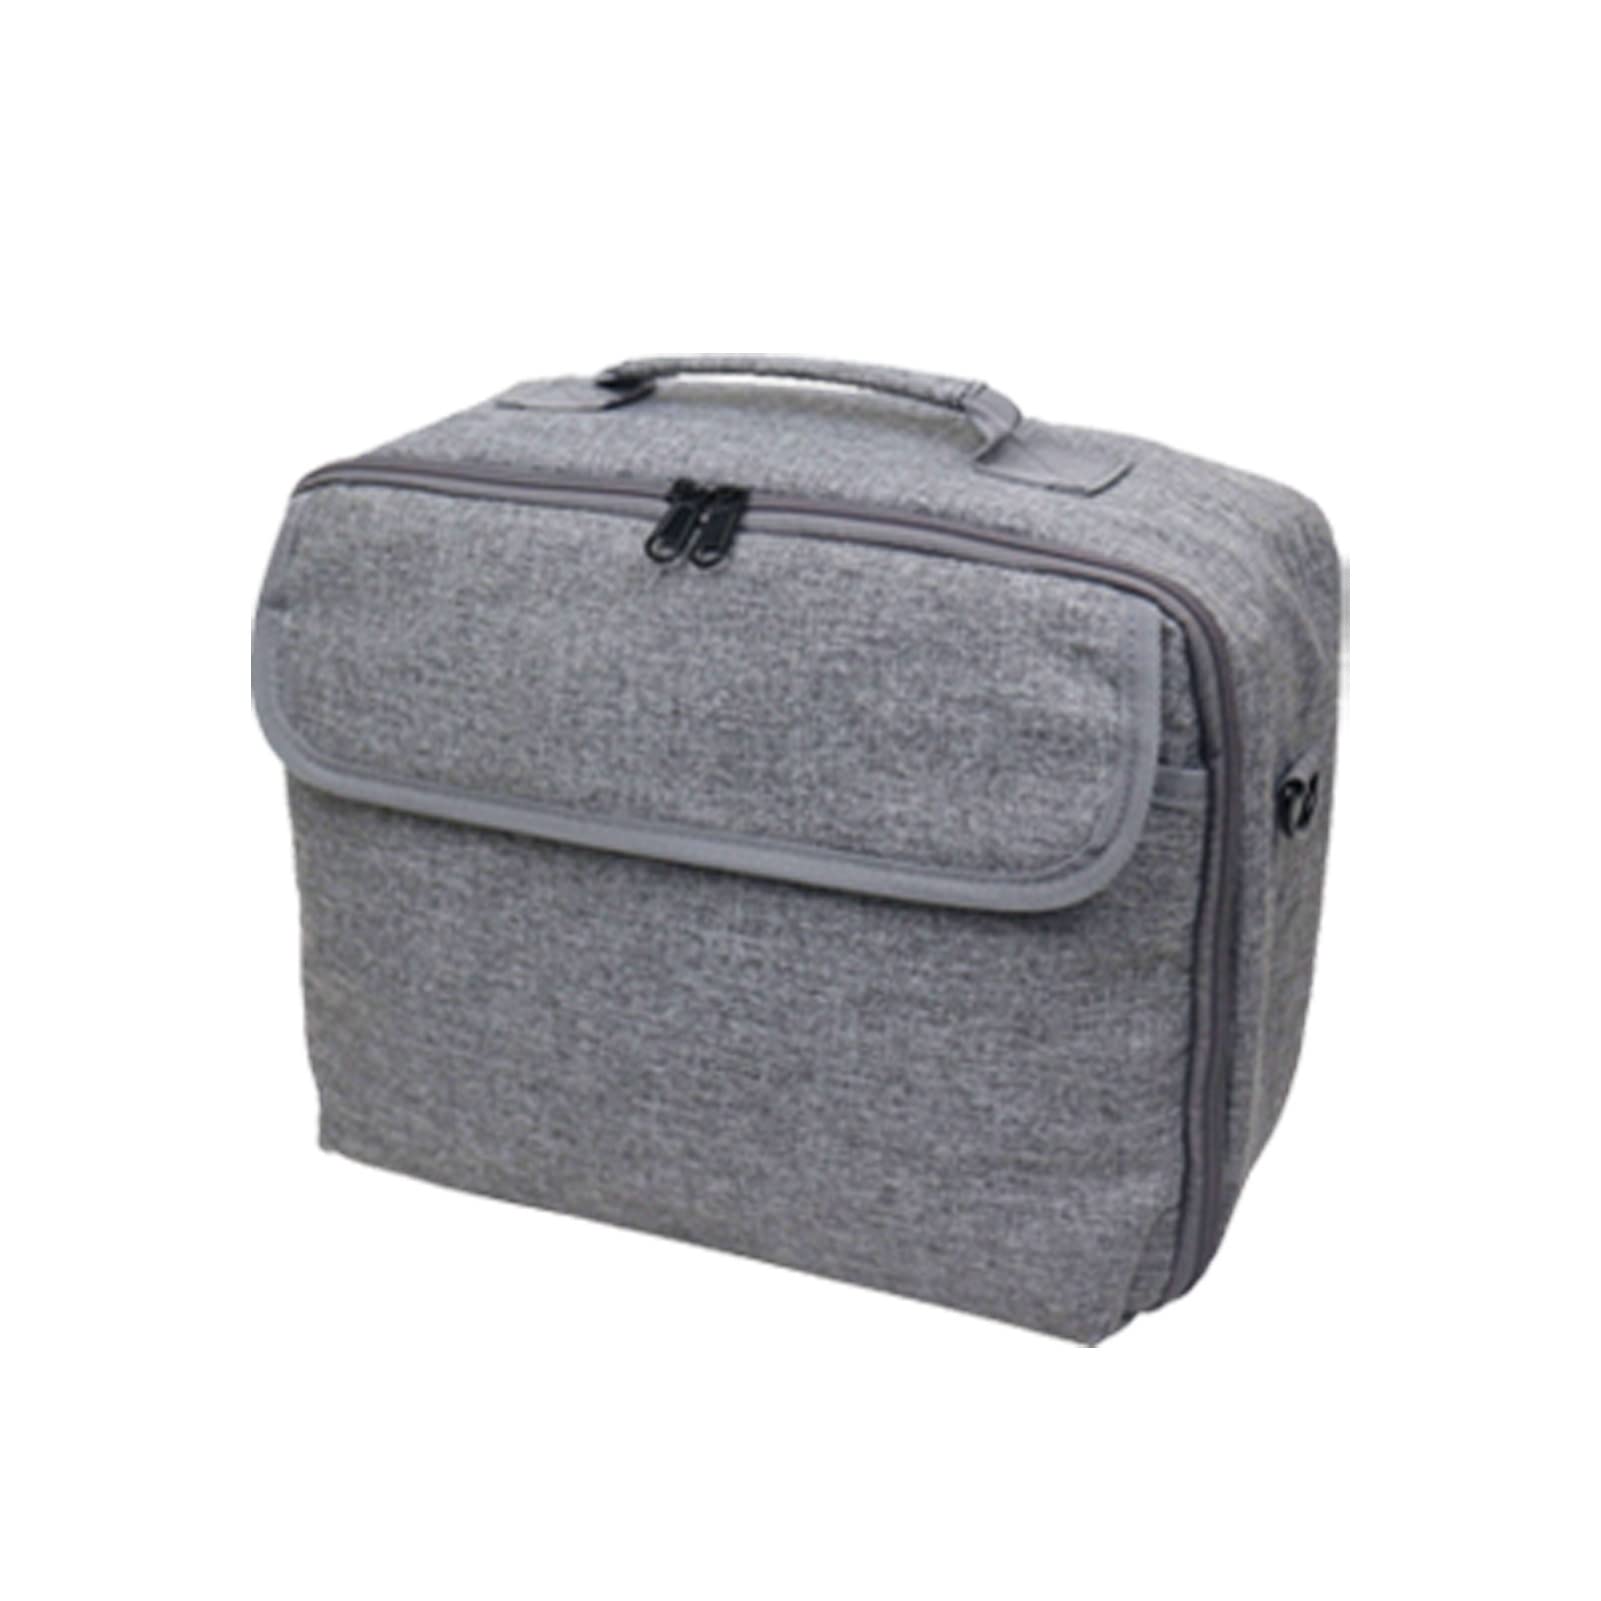 ARSMI Tragbare Speicherschutztasche Fotodrucker Tasche Handtasche Schutztasche Fit for Canon Fit for Selphy CP1300. Kamera Tasche (Color : Grey)